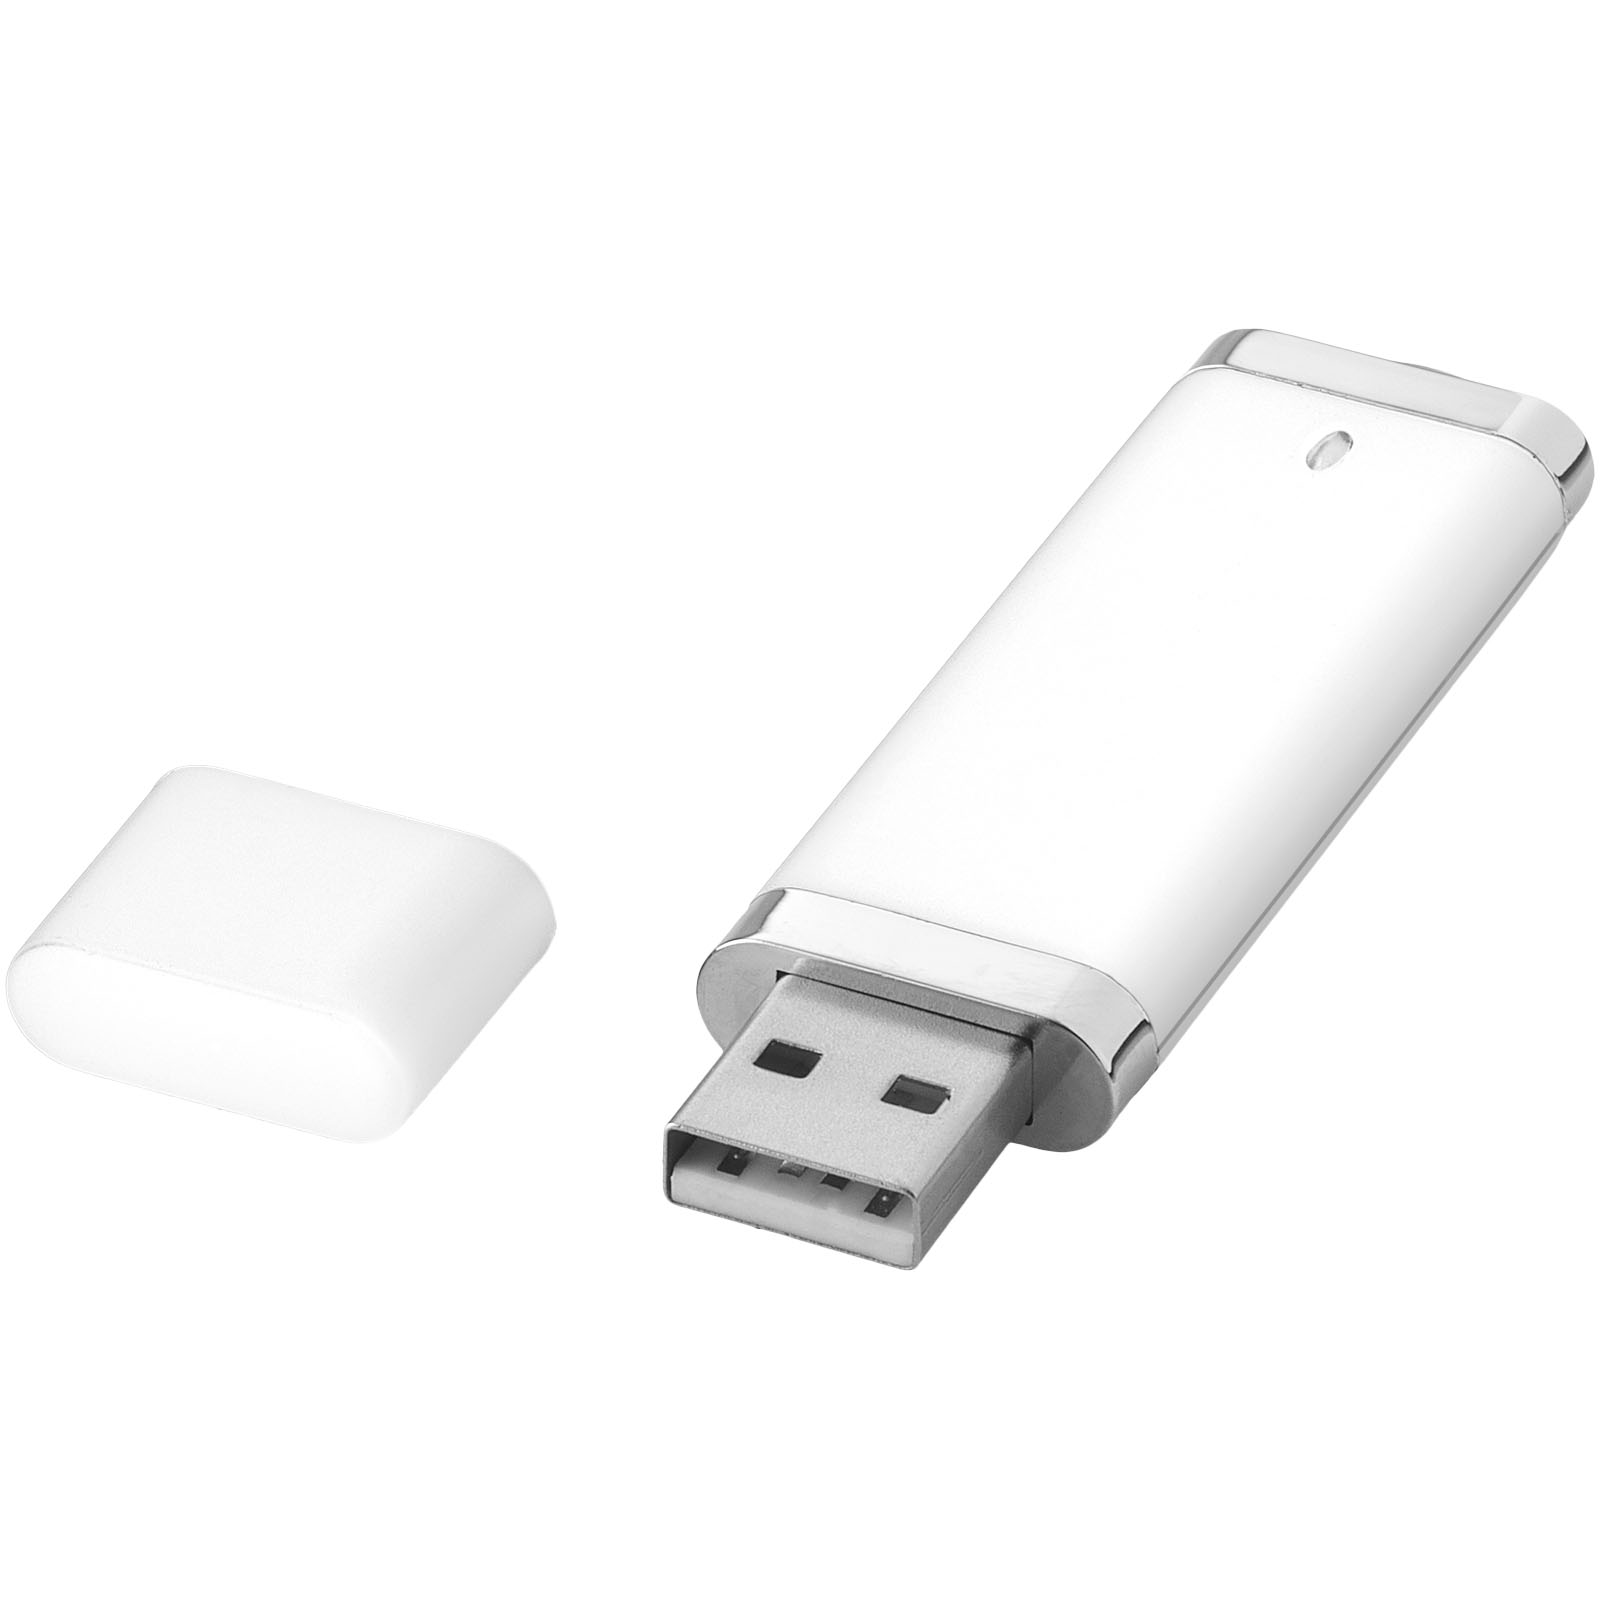 Technology - Flat 4GB USB flash drive